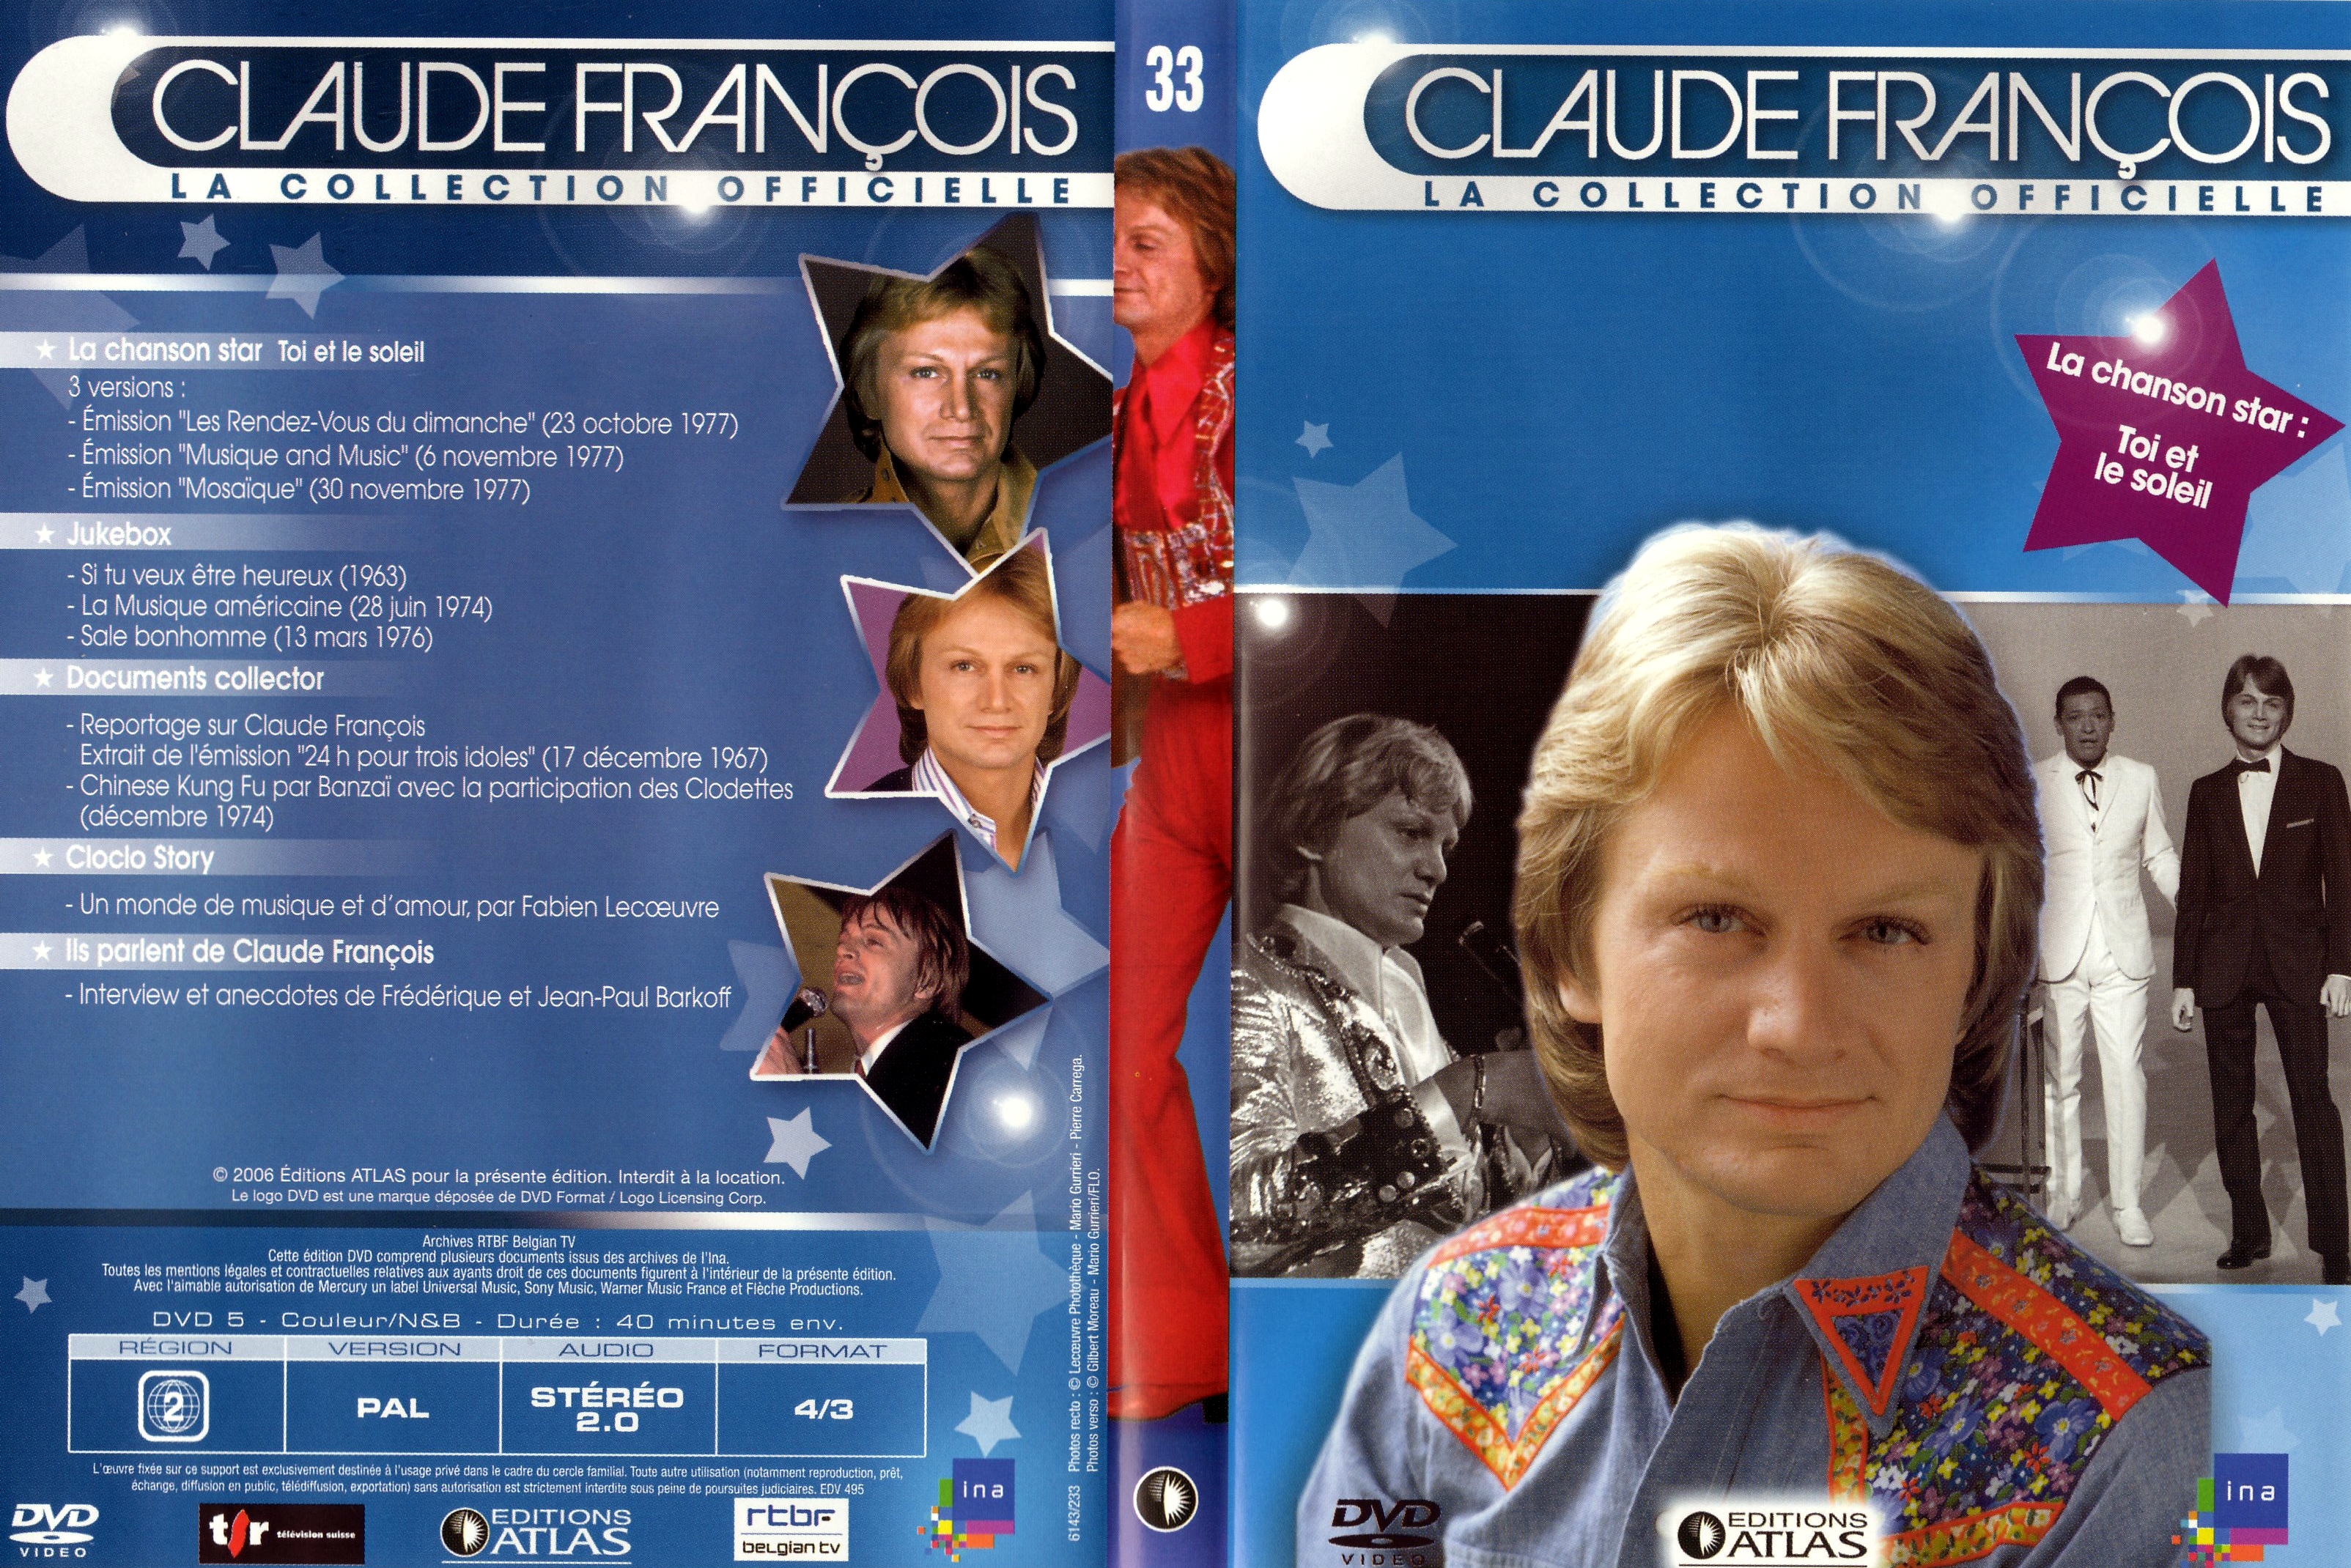 Jaquette DVD Claude Francois la collection officielle vol 33